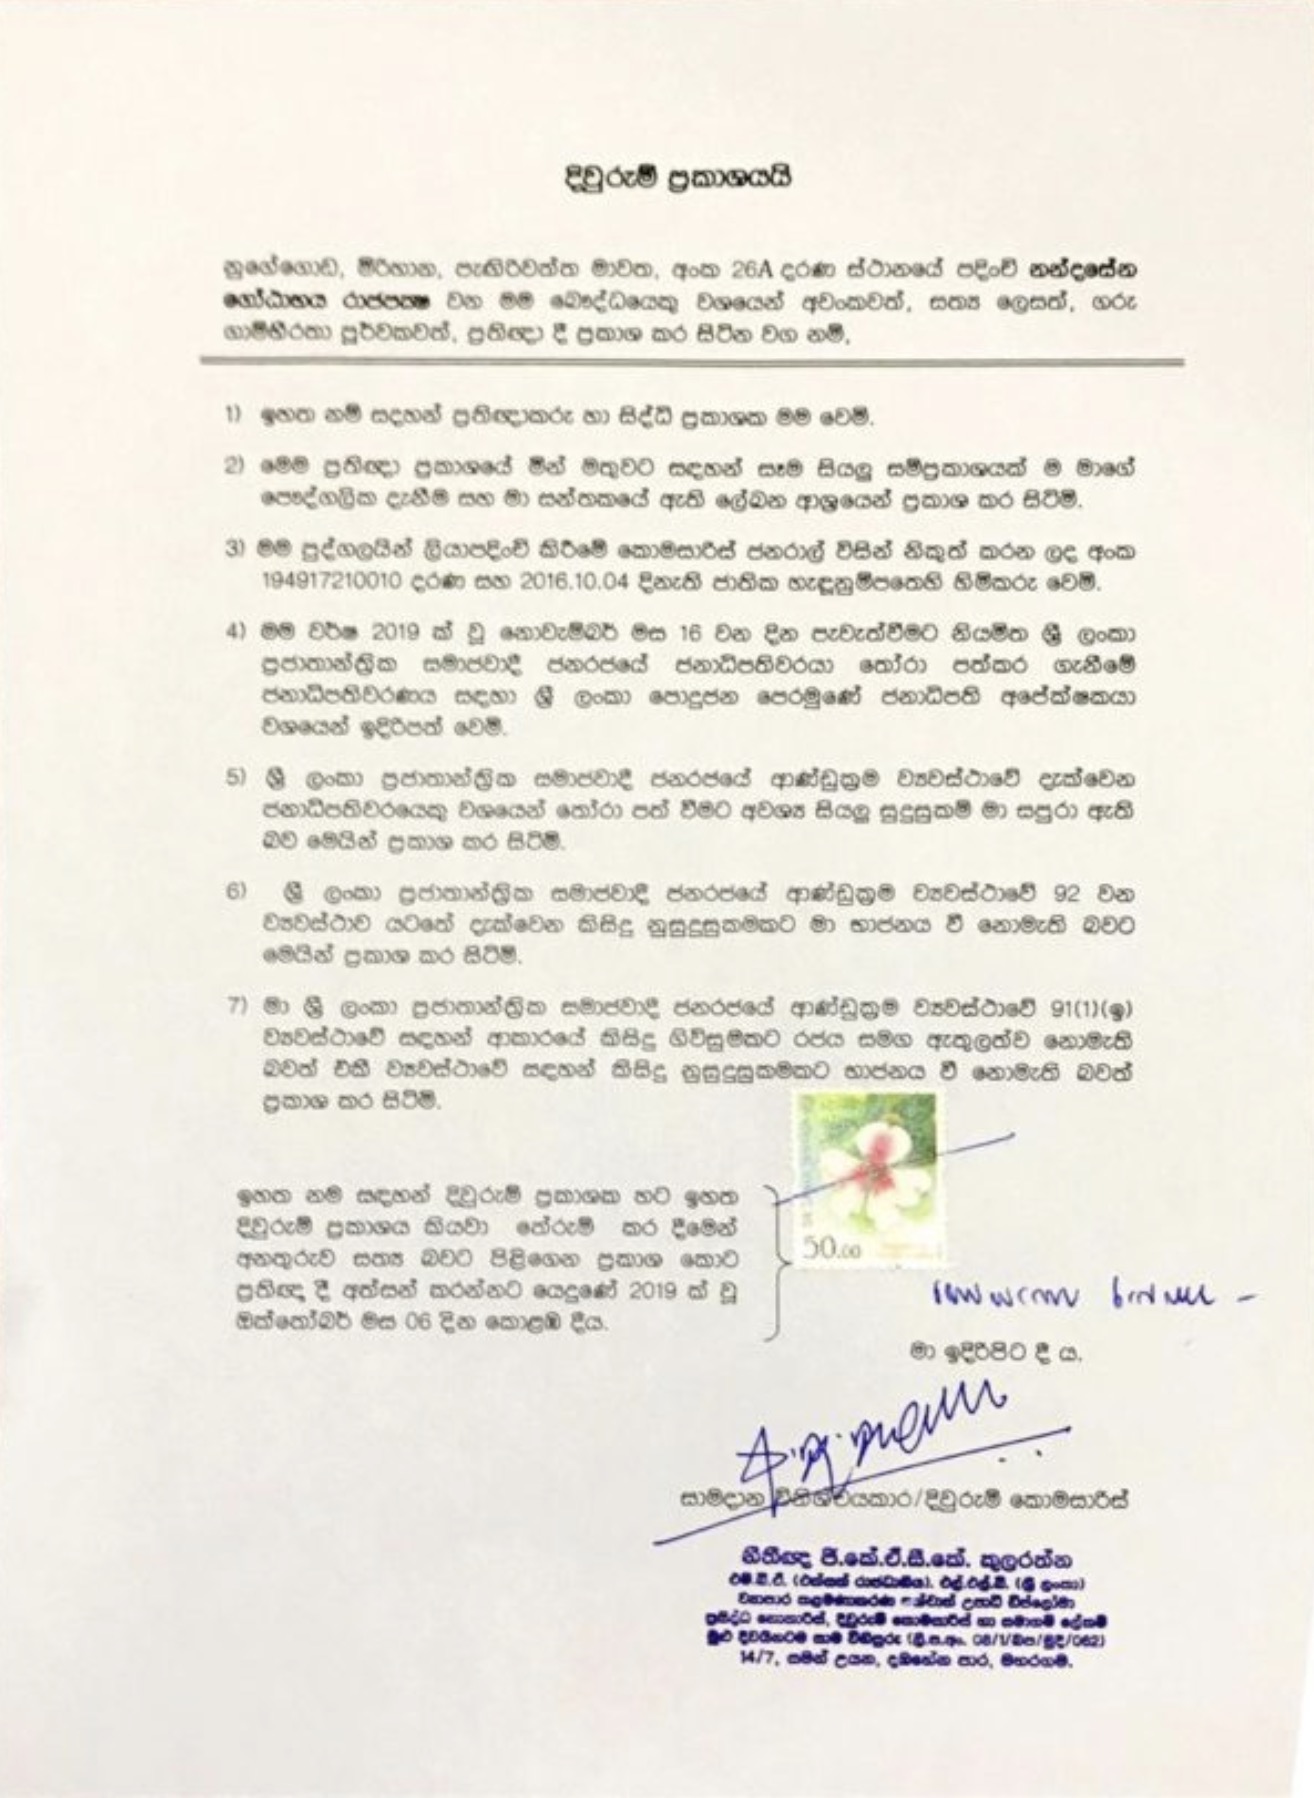 Anomalies with affidavit submitted by Sri Lanka Podujana Peramuna